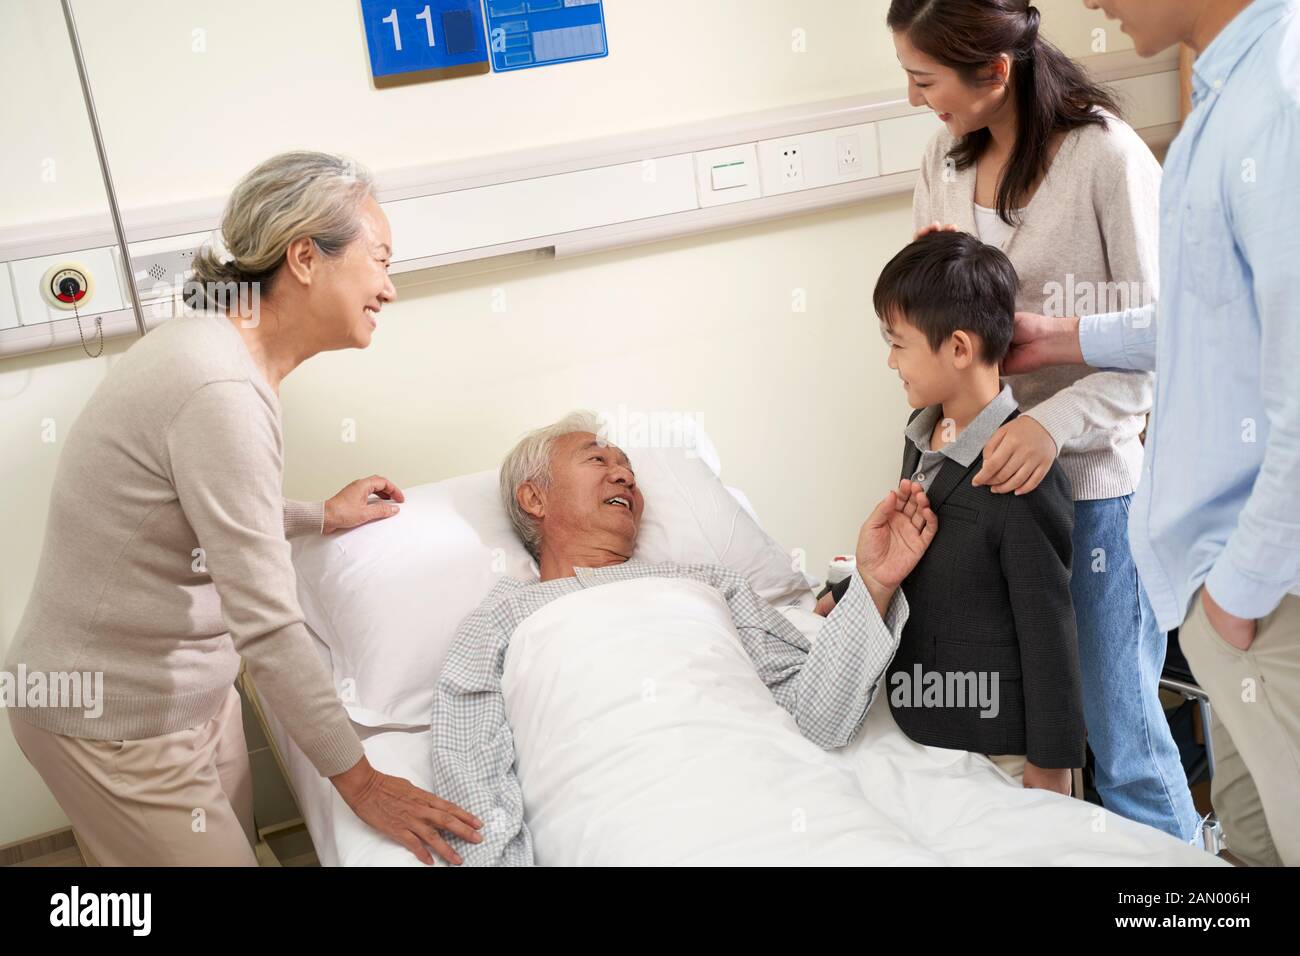 Glückliche asiatische Familie der drei Generationen, die mit dem hospitalisierten Großvater am Krankenbett spricht Stockfoto